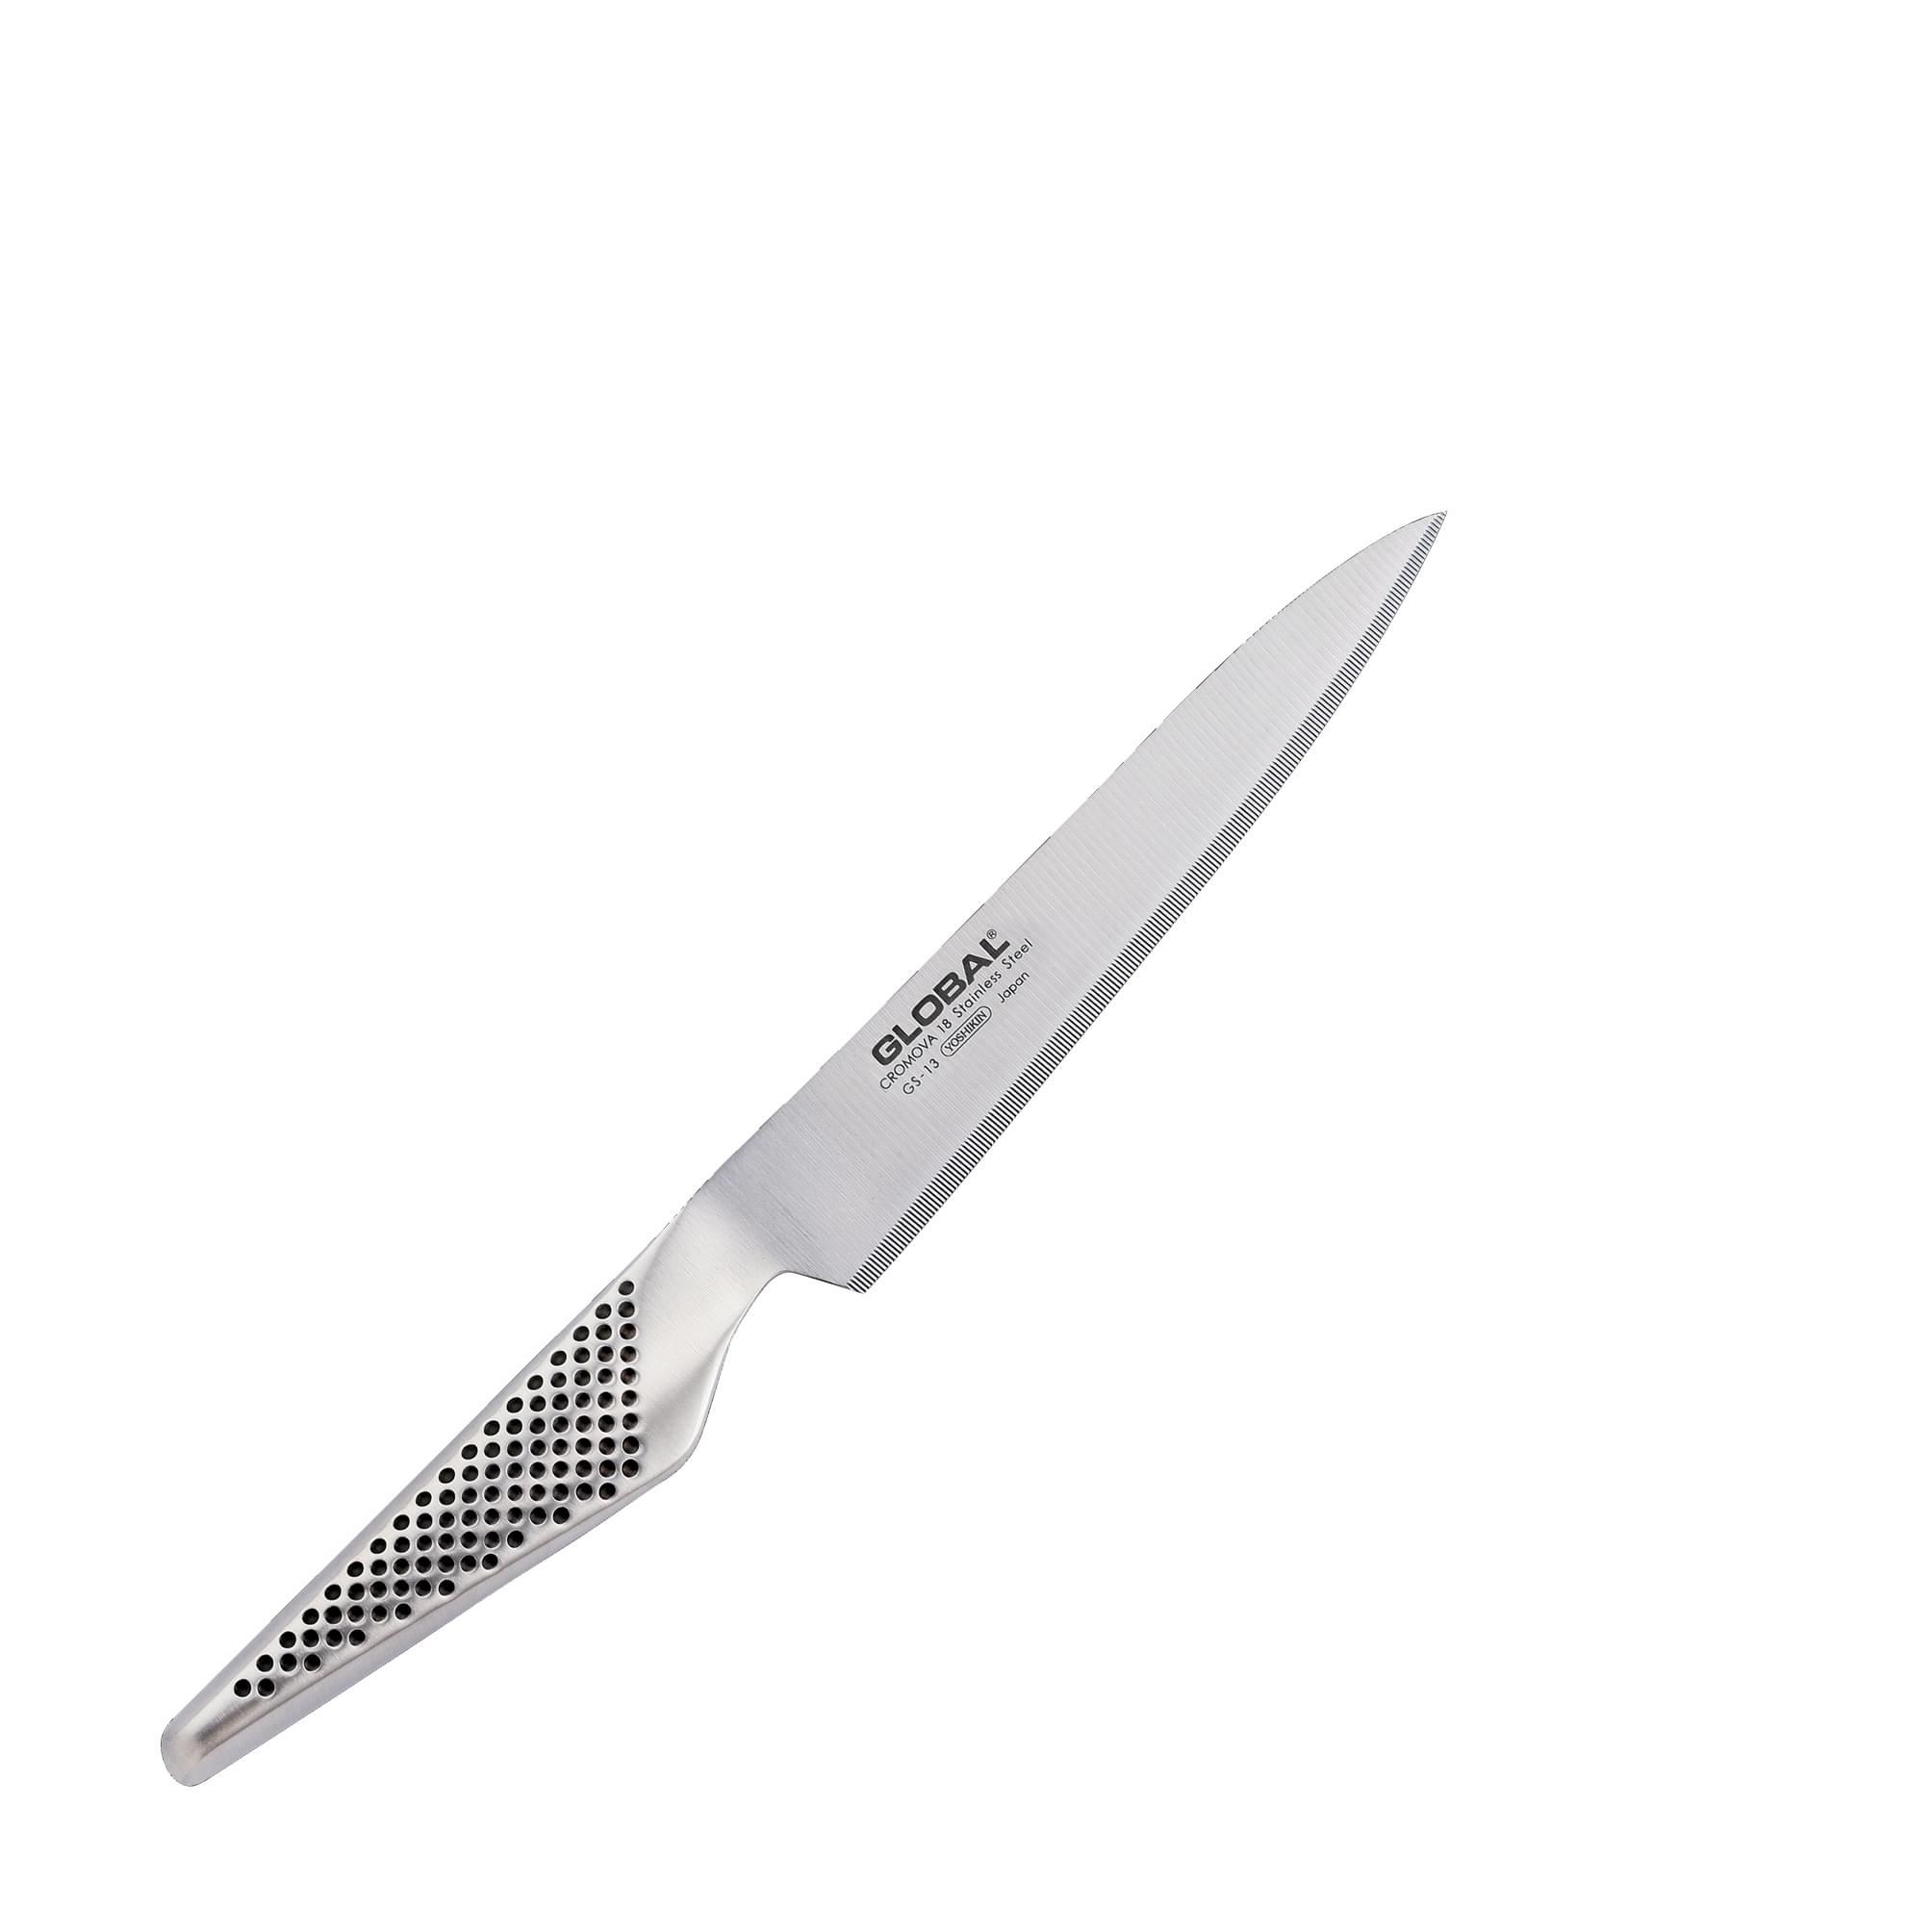 Global GS13R destrimani coltello lama microseghettata - Gruppo 3 A.B.D.